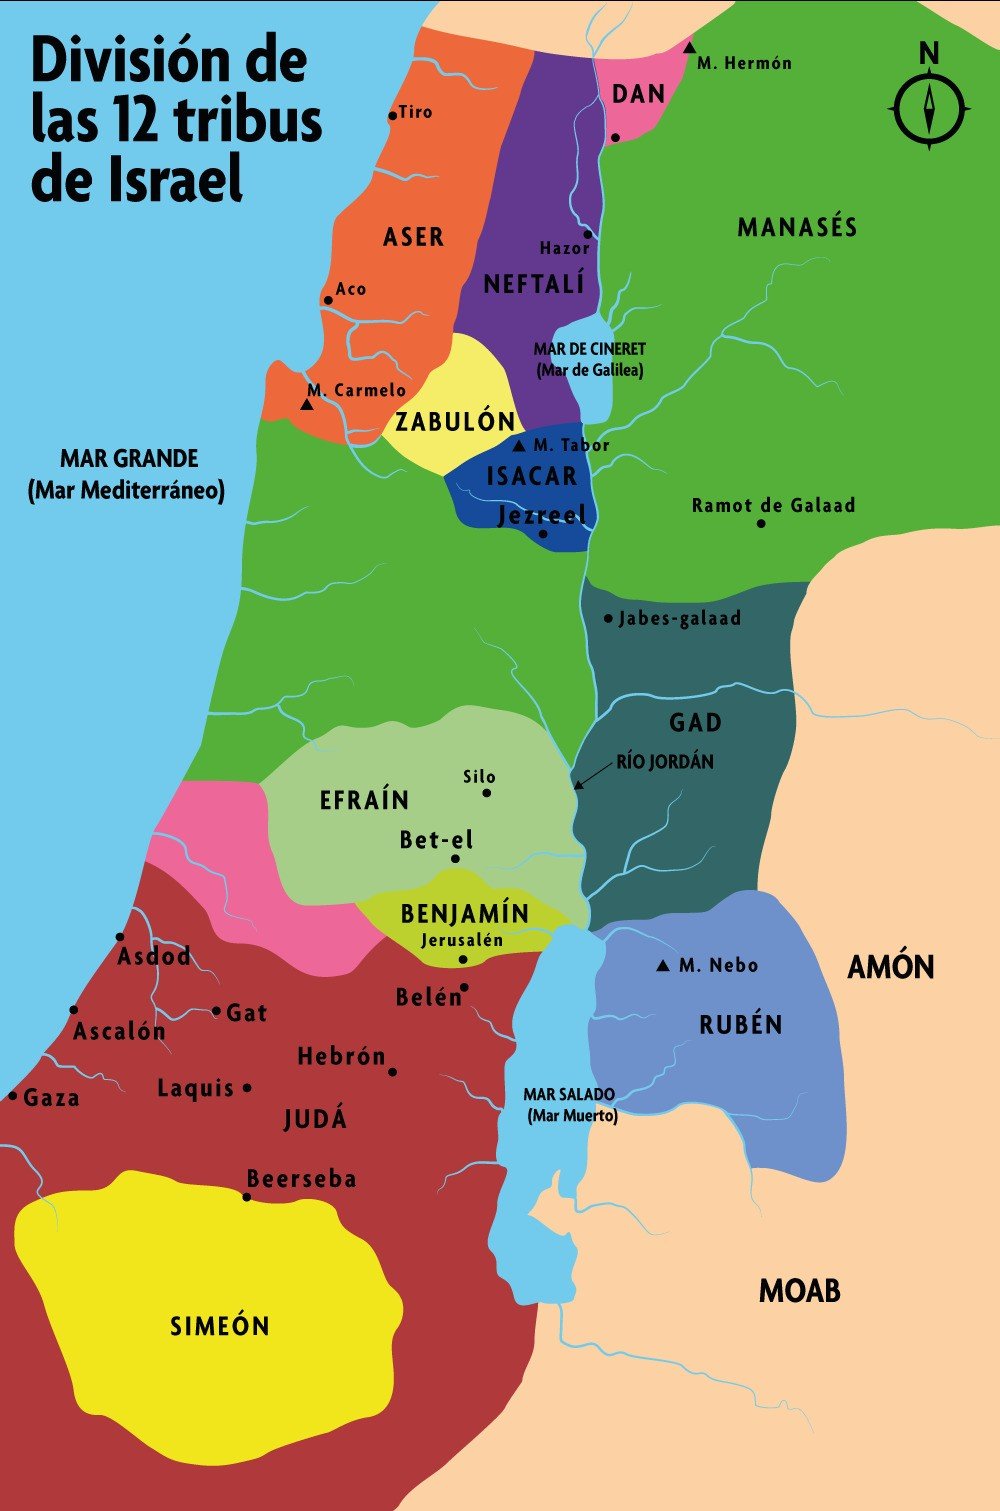 Mapa de las 12 tribus de Israel de acuerdo con la distribución bíblica